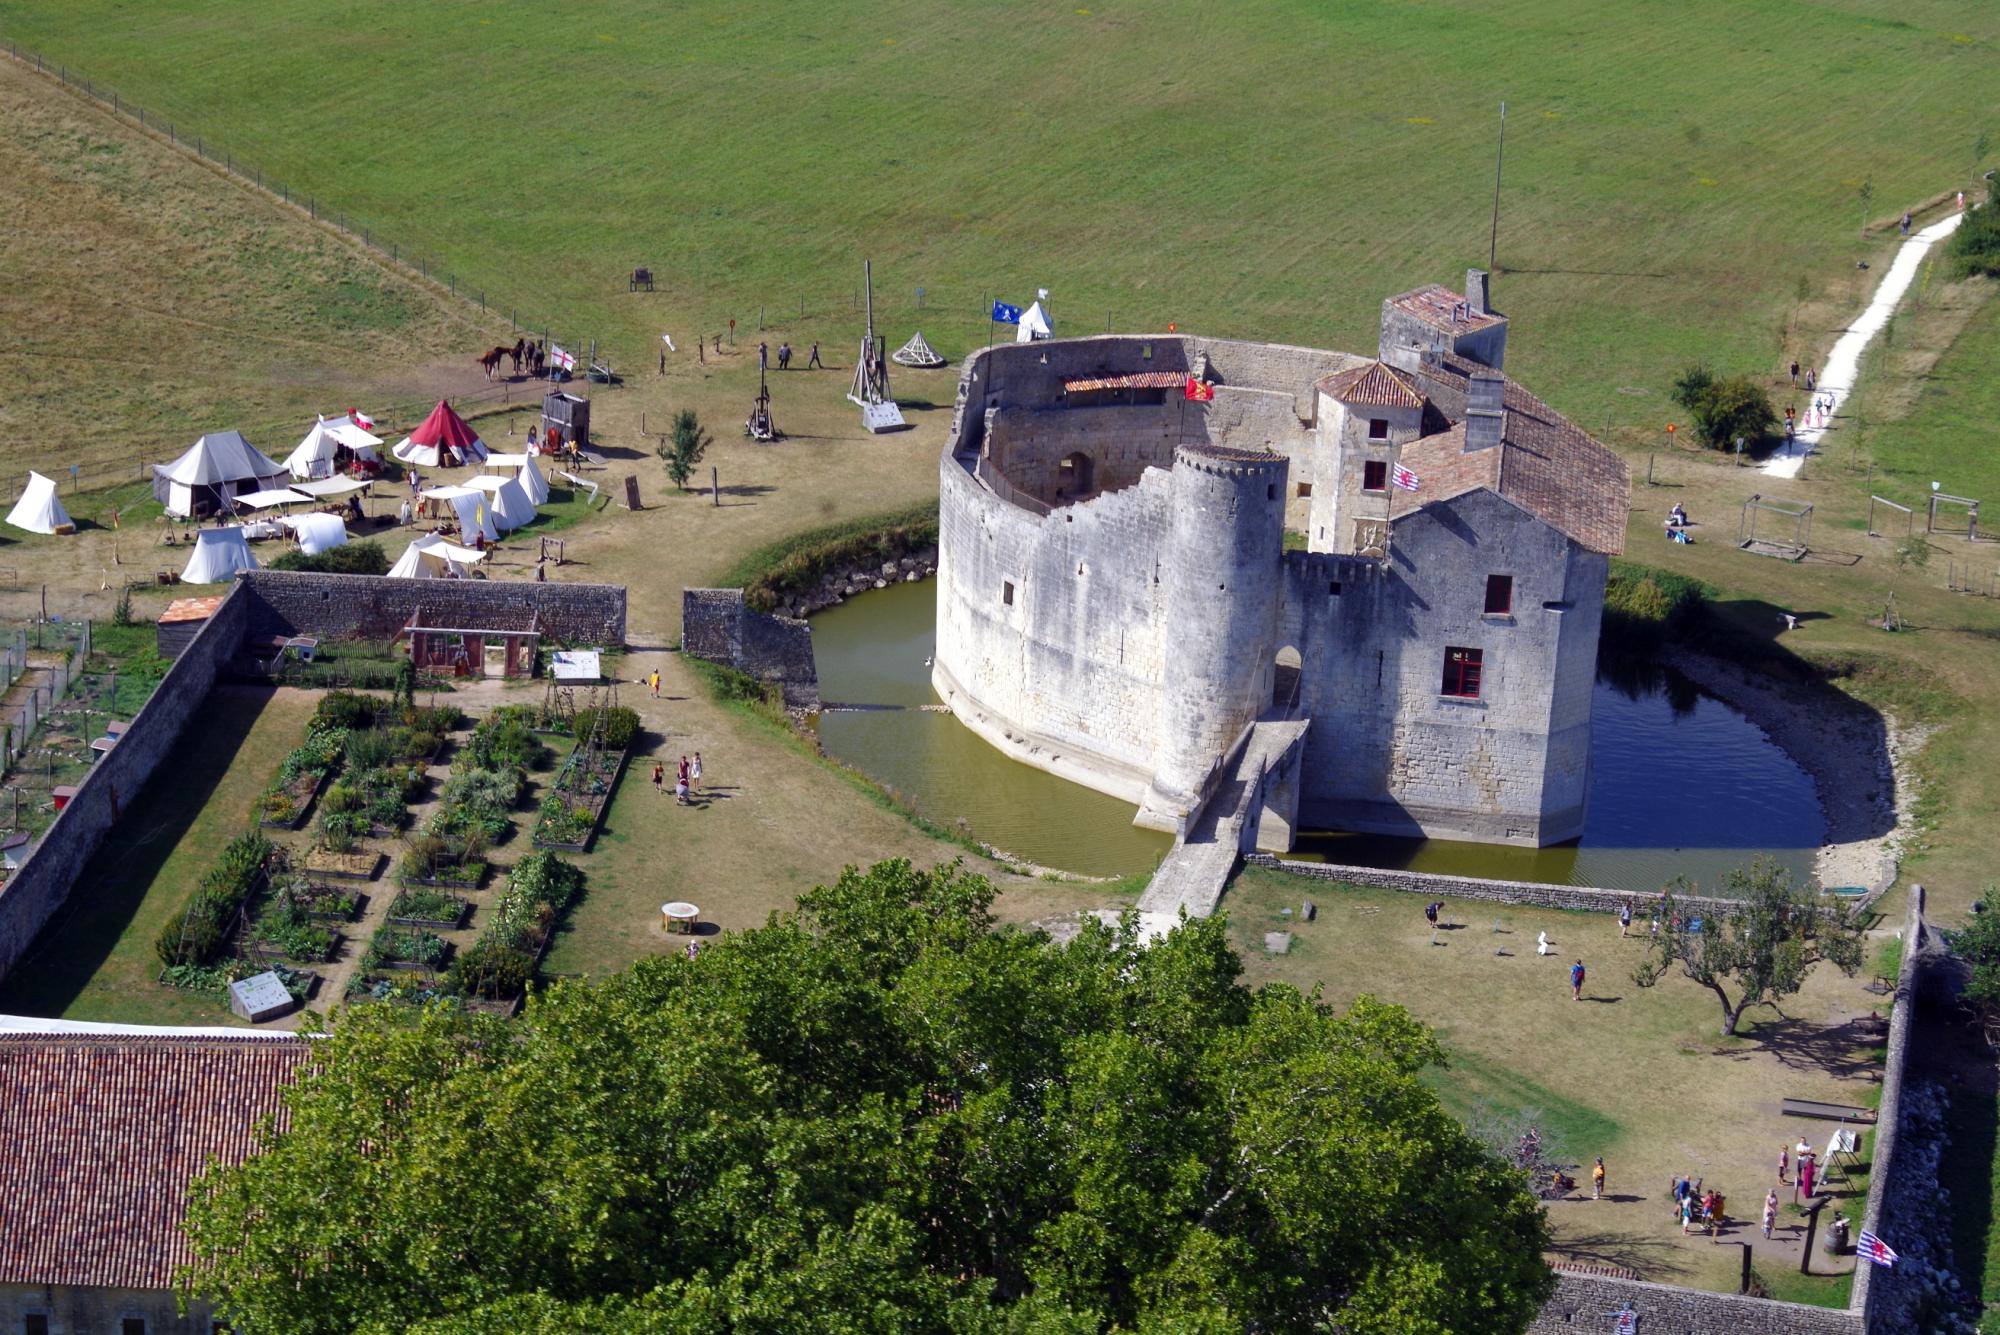 Activités touristiques en Charente-Maritime : visites château fort médiéval proche Rochefort